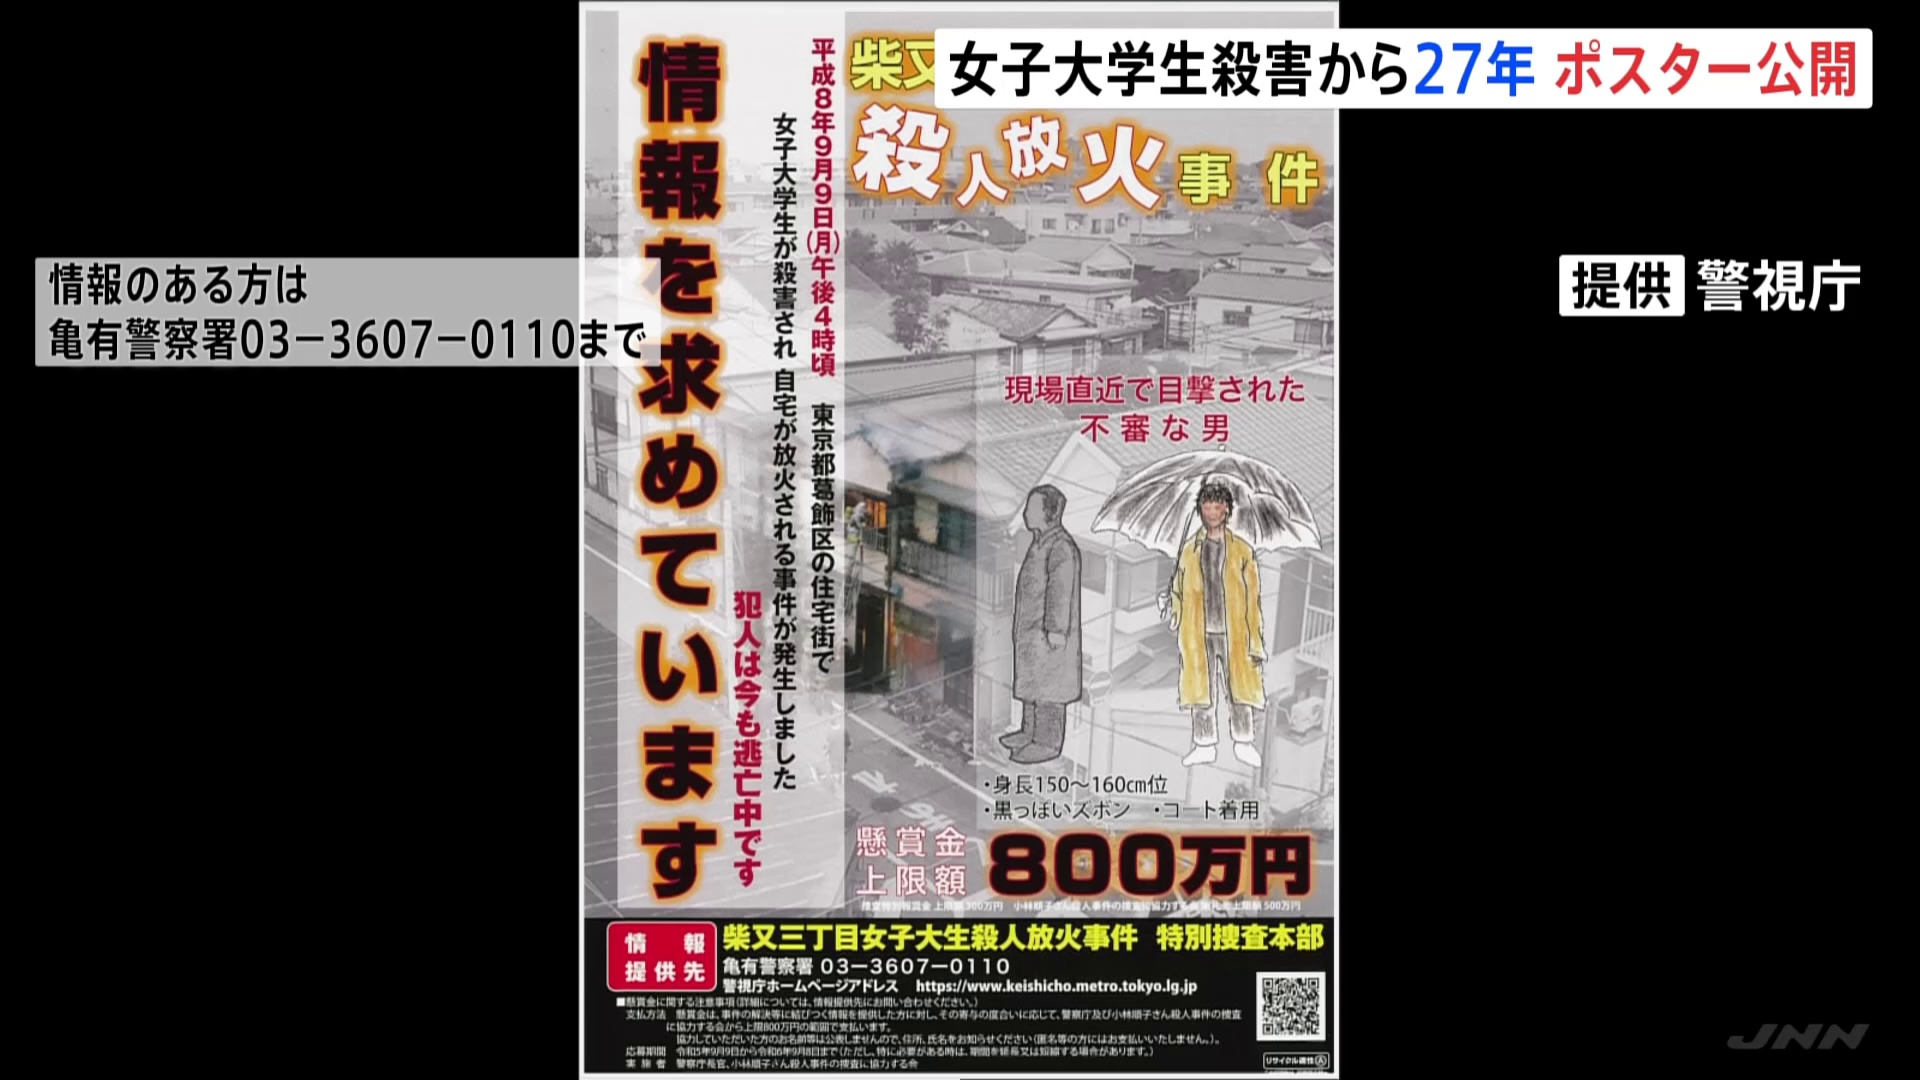 【上智大生放火殺人事件】未解決のまま27年 警視庁が情報提供呼びかける新たなポスターや動画を公開